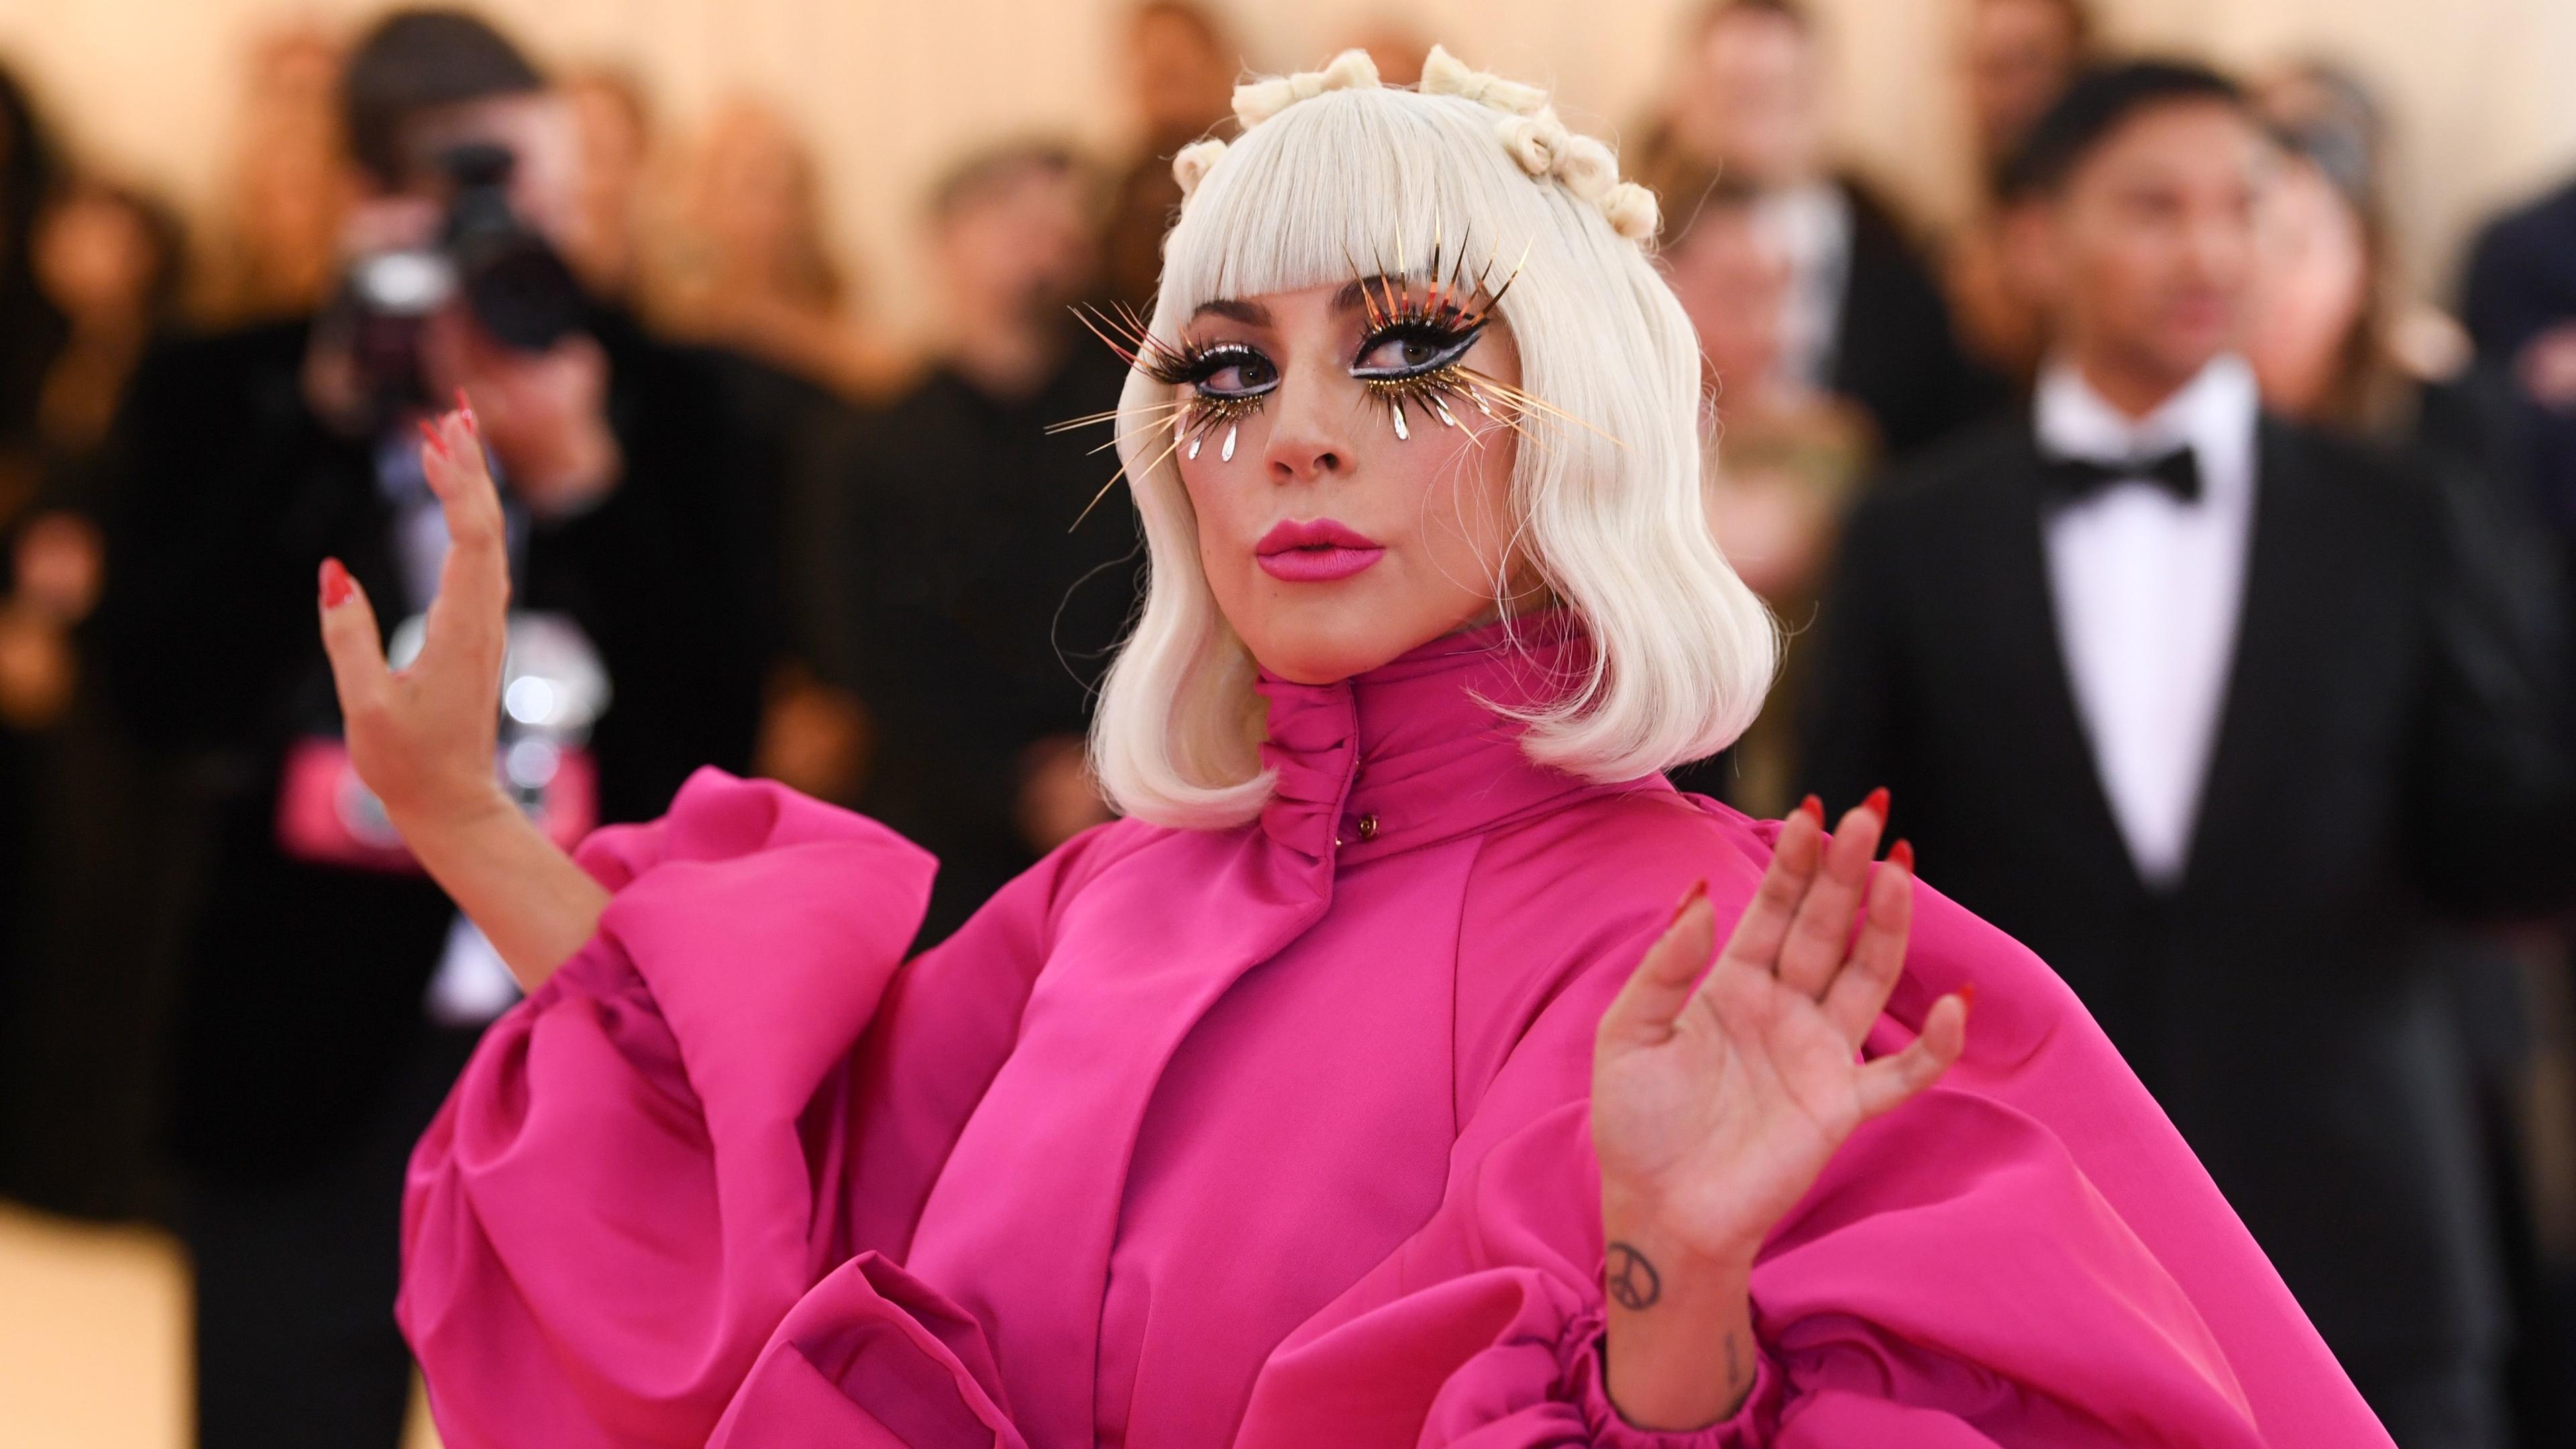  Lady Gaga trägt ein rosafarbenes Kleid mit Puffärmeln. Hellblonde Haare reichen ihr bis zur Schulter und sie trägt lange künstliche Wimpern. Im Hintergrund sind Fotografen und ein Mann im Smoking zu sehen.